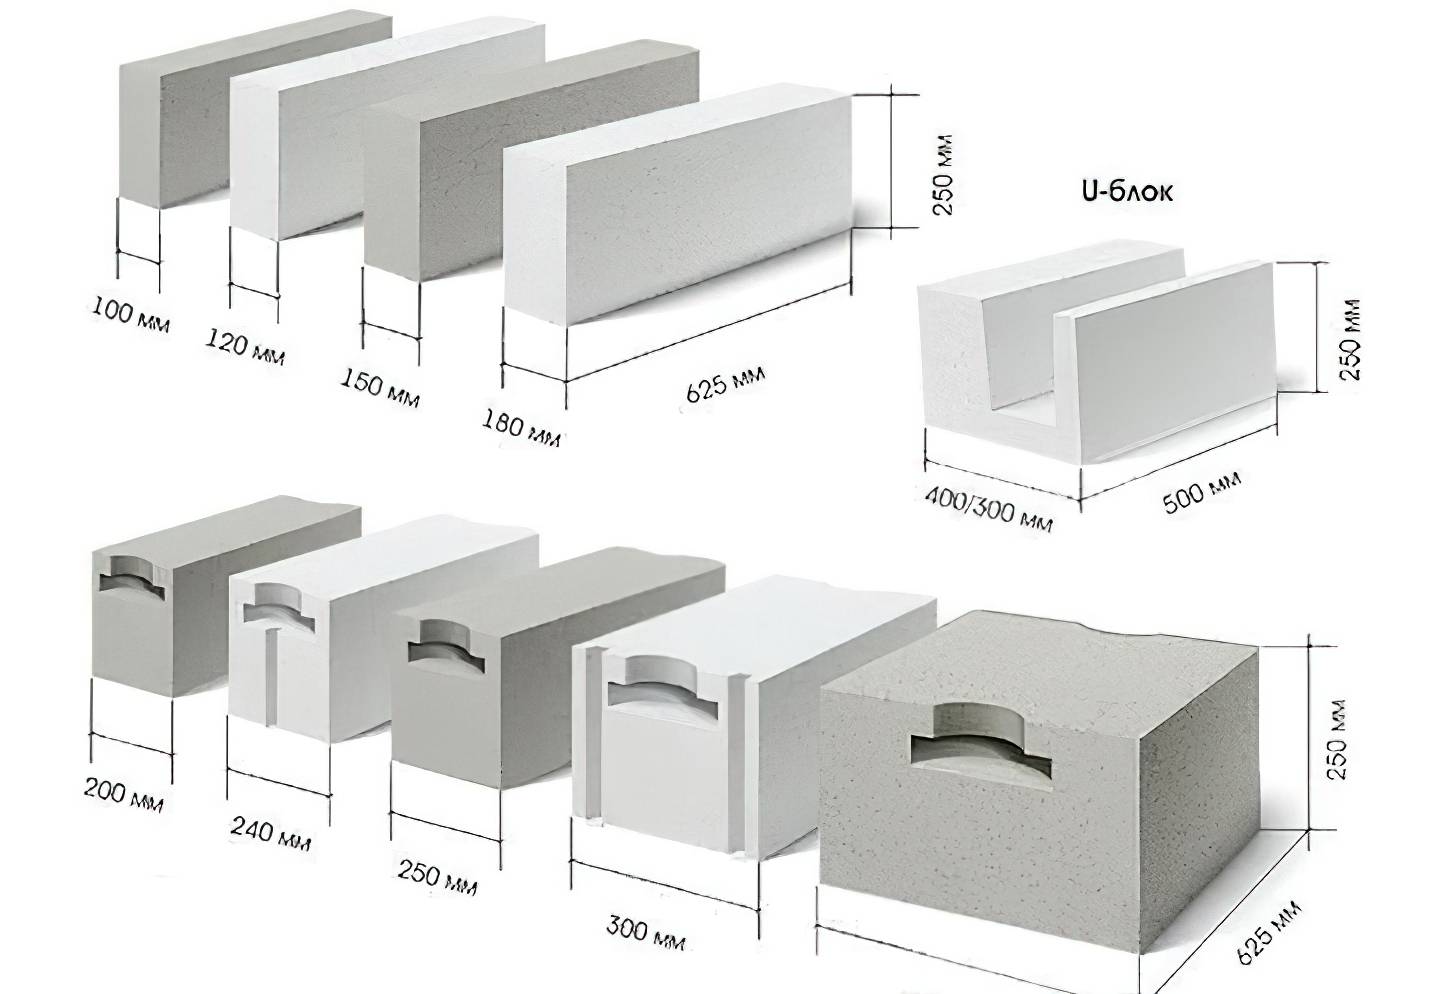 Бетонные блоки для фундамента: виды, размеры, сколько стоят изделия 20х20х40 см